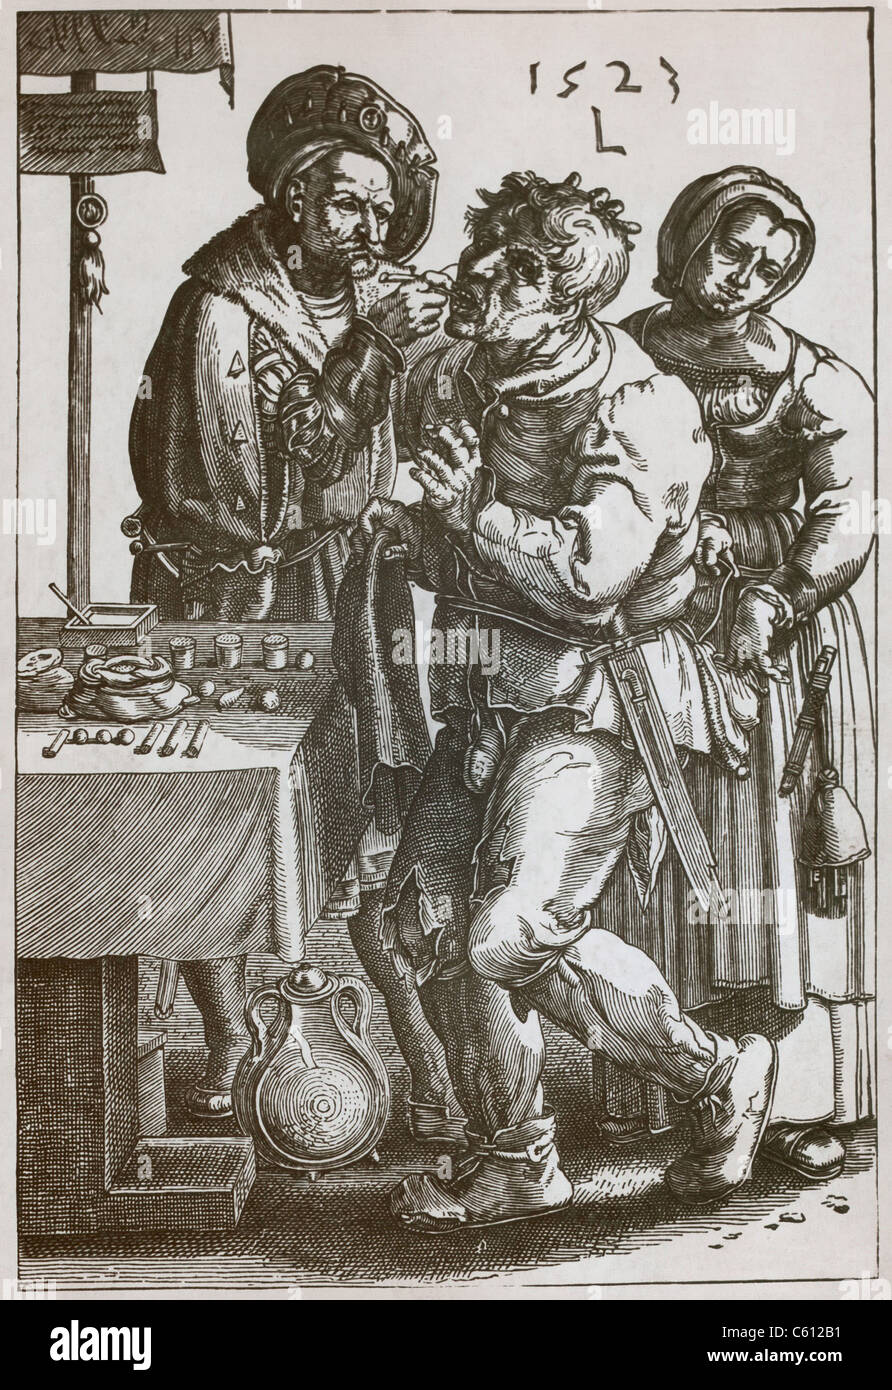 Der Chirurg Zahnarzt zieht eines Mannes Zahn, während eine Frau nimmt der Patient Tasche. 1523 Stich nach einem Gemälde von Lucas van Leyden (1494-1533). Stockfoto